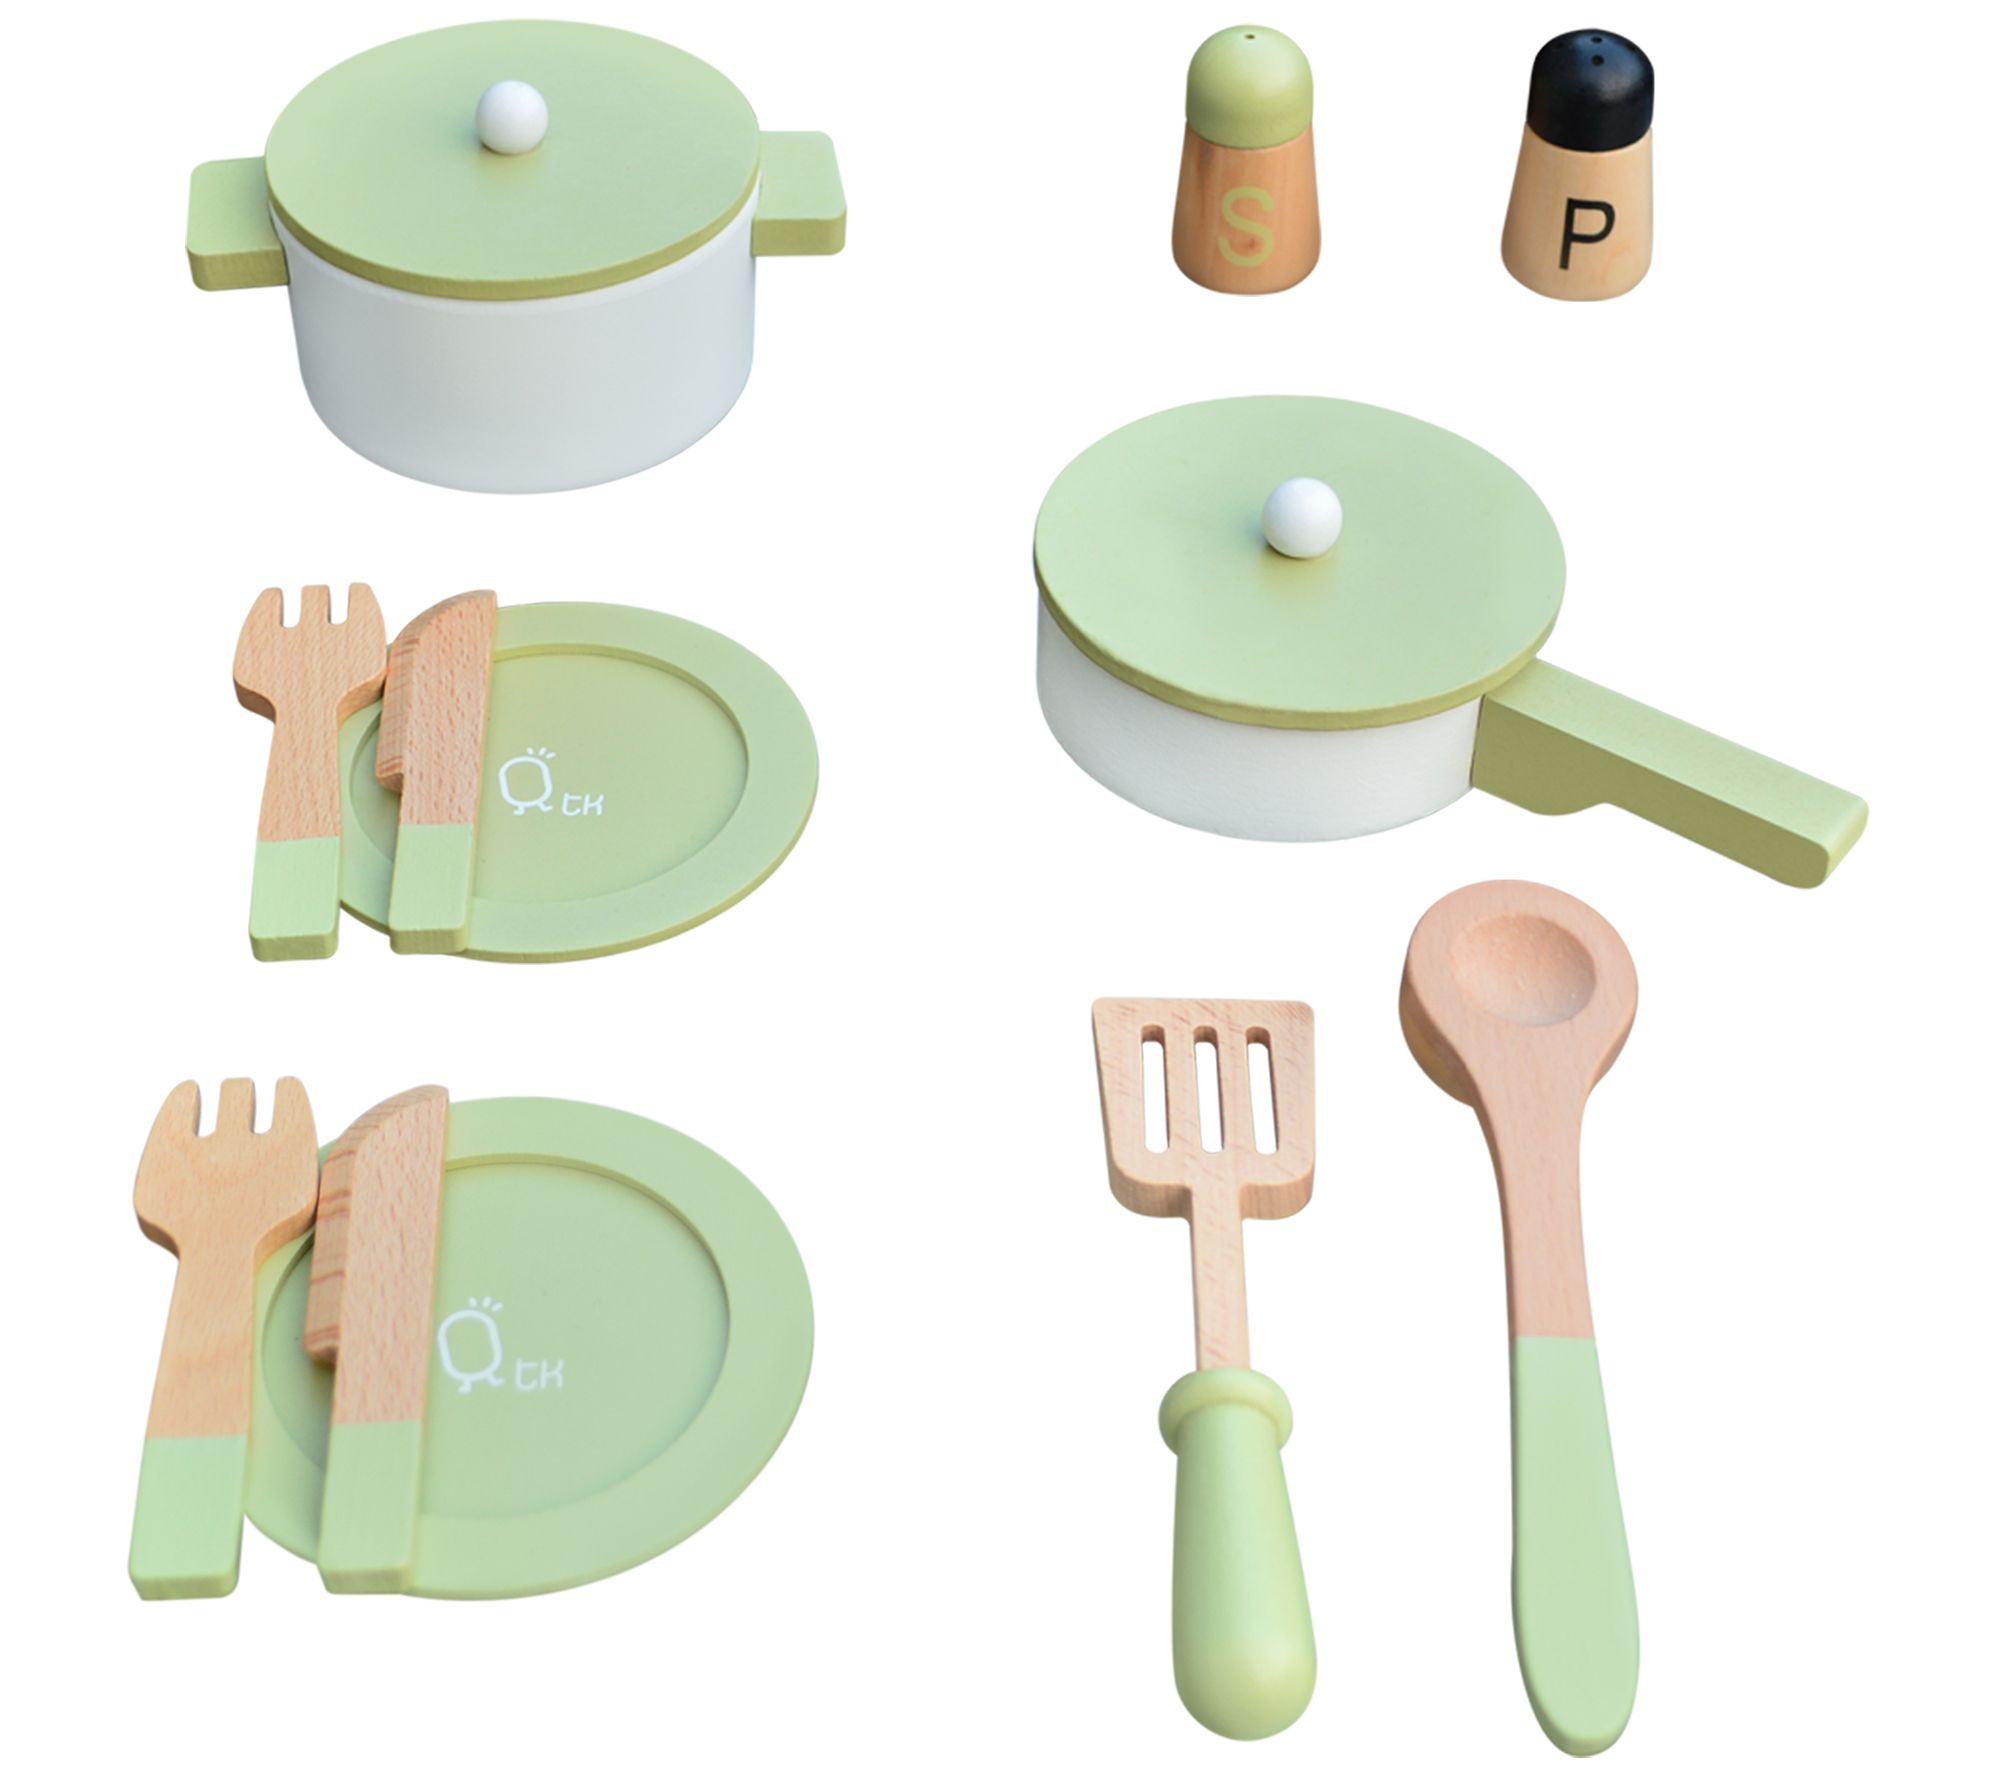 11pcs Kids Play Kitchen Cooking Utensils Pots Pans Tools Toys Set Xmas Gift UK 